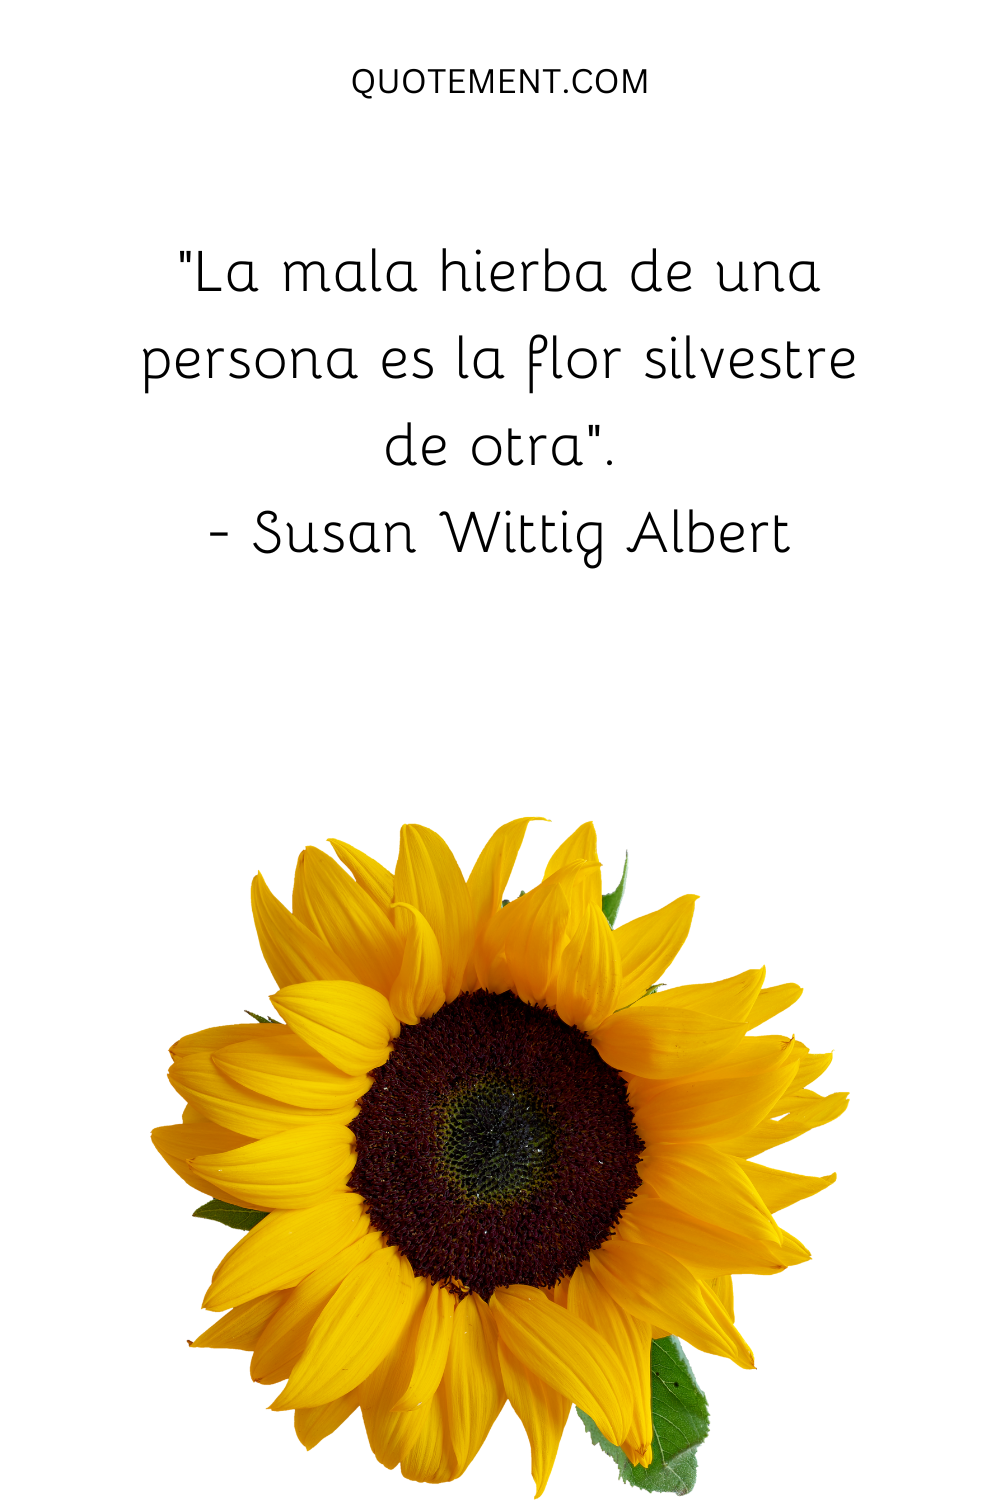 "La mala hierba de una persona es la flor silvestre de otra". - Susan Wittig Albert